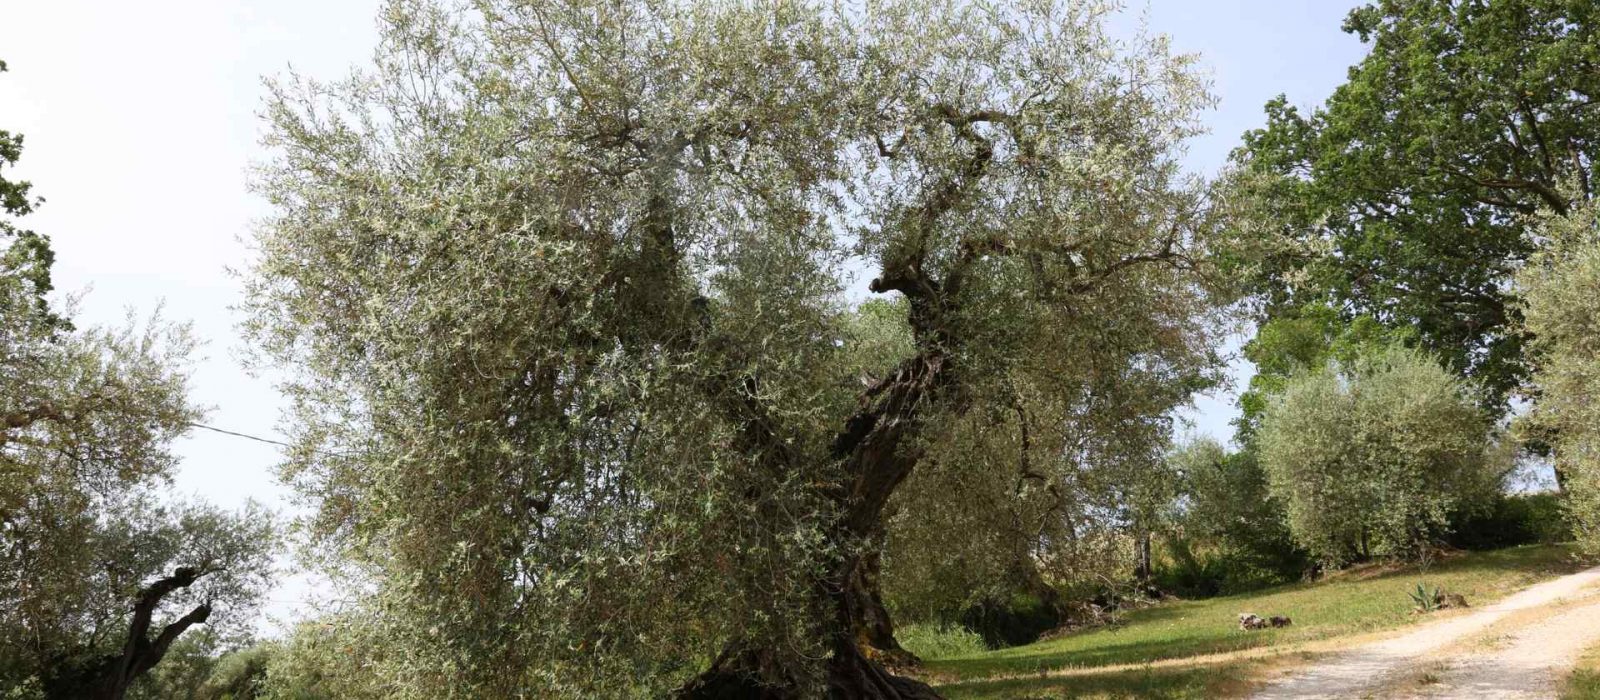 Particolare di un ulivo dell'Oliveto storico secolare dell'olivo Rajo a Montecampano